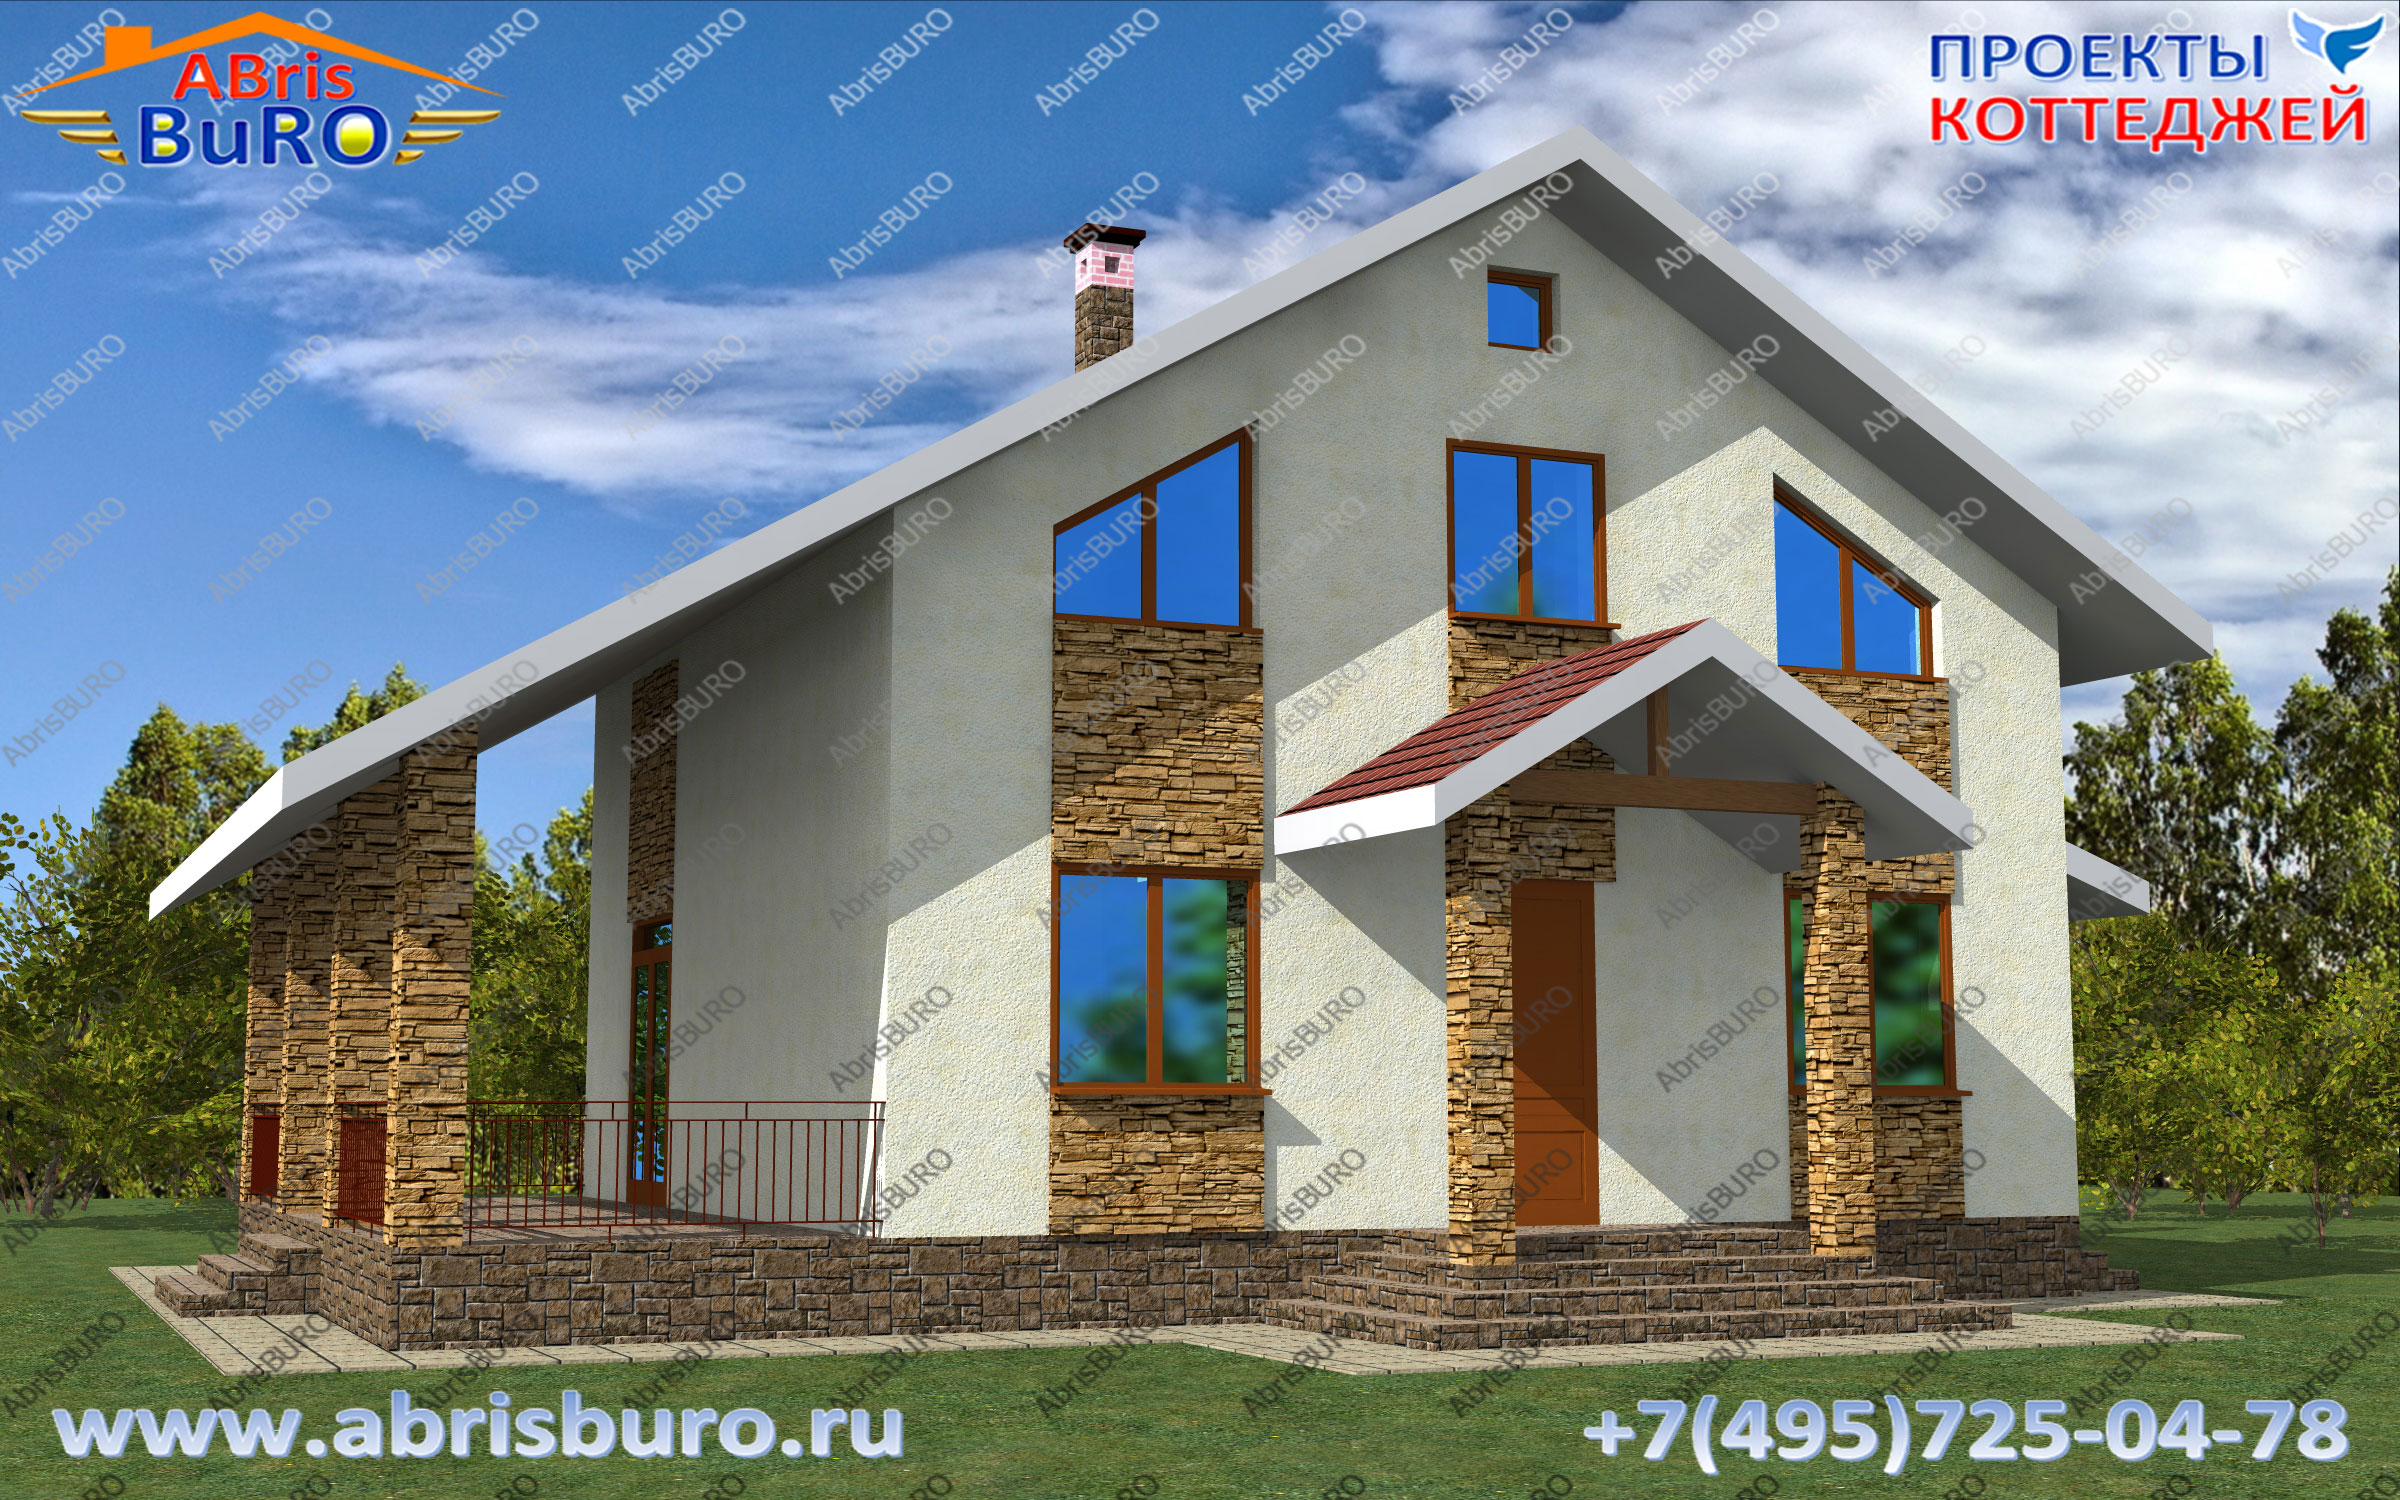 Дома и коттеджи с террасой на сайте www.abrisburo.ru